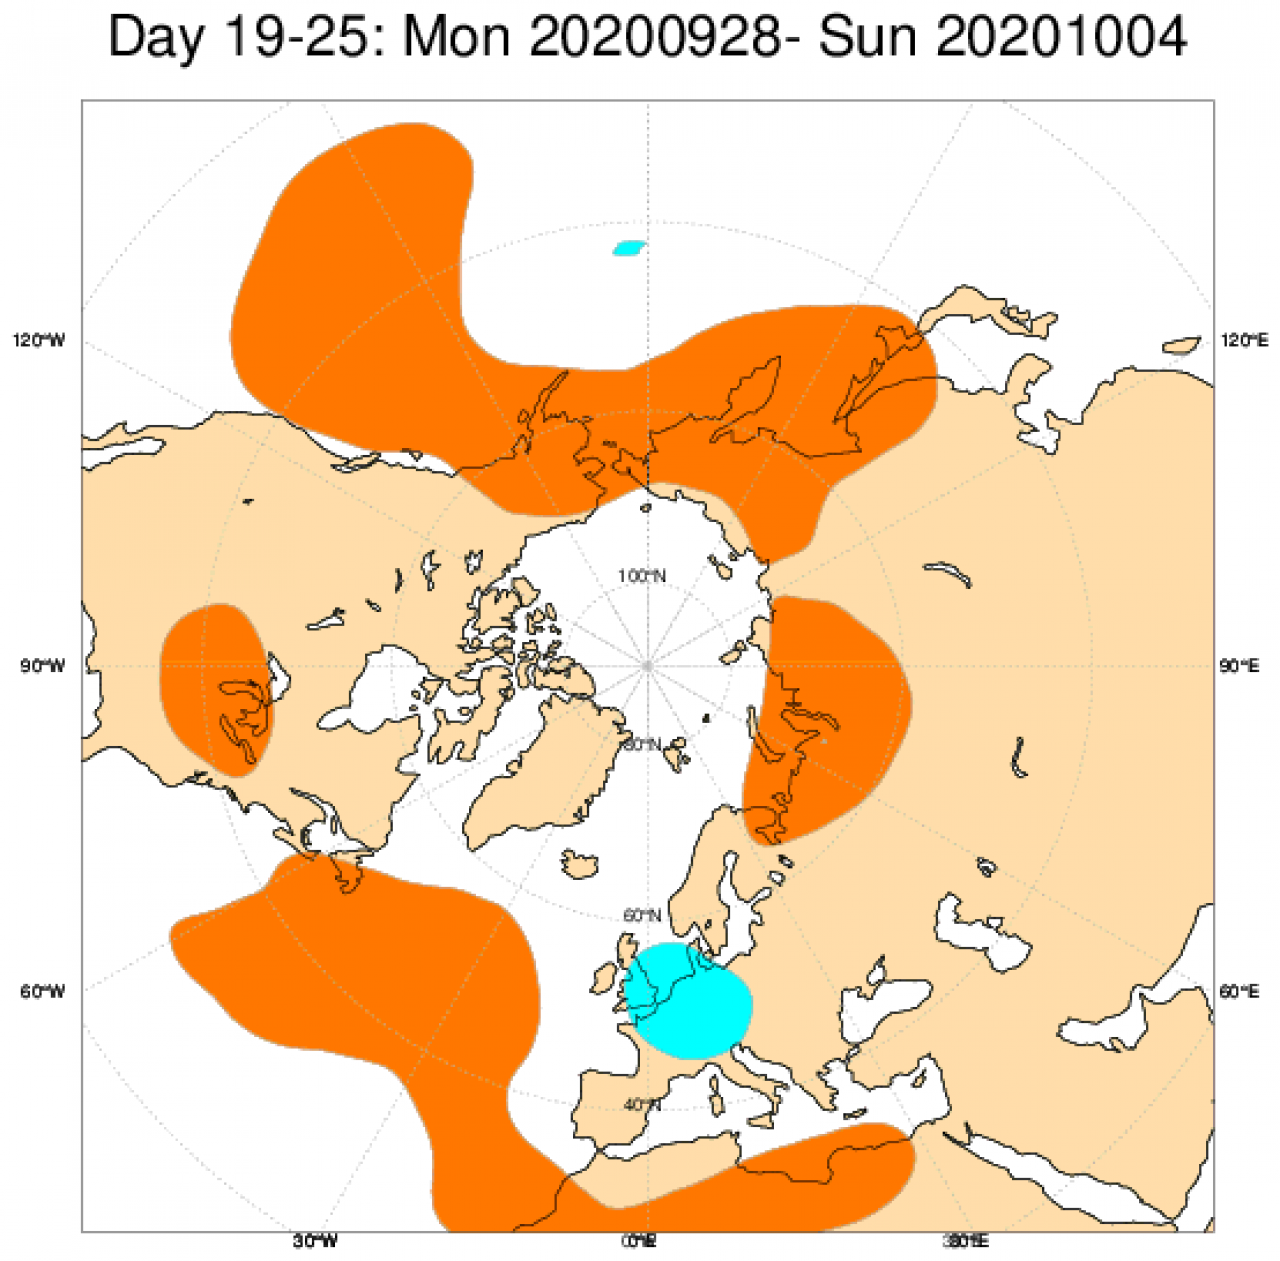  Le anomalie di geopotenziale a 500hPa secondo il modello ECMWF mediate nel periodo 28 settembre - 4 ottobre